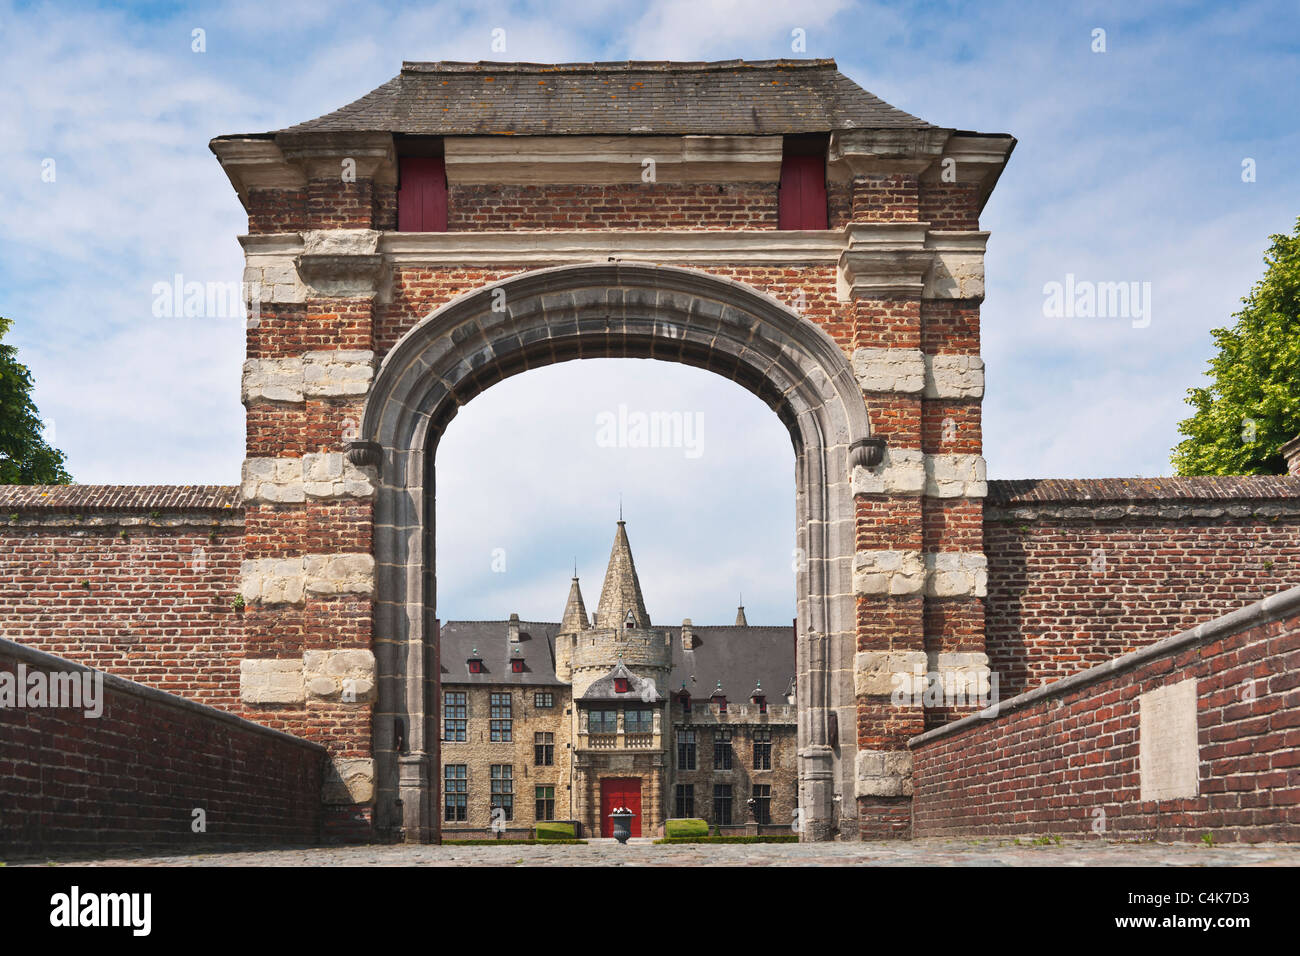 Schloss von Laarne, Belgien | Castle of Laarne, Belgium Stock Photo